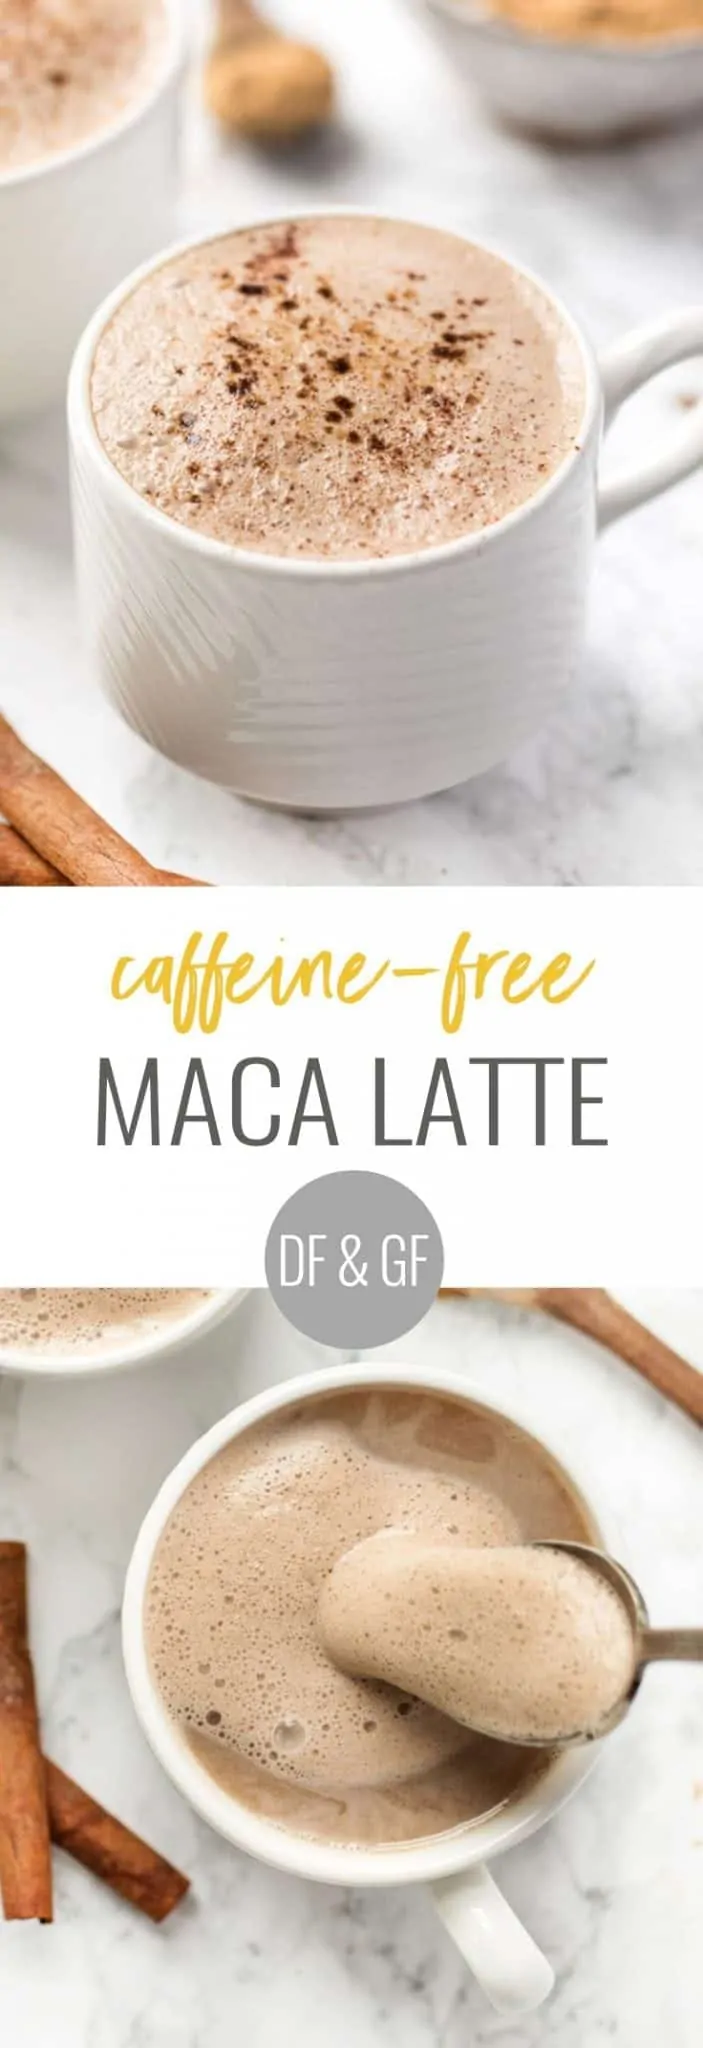 how to make a caffeine-free maca latte